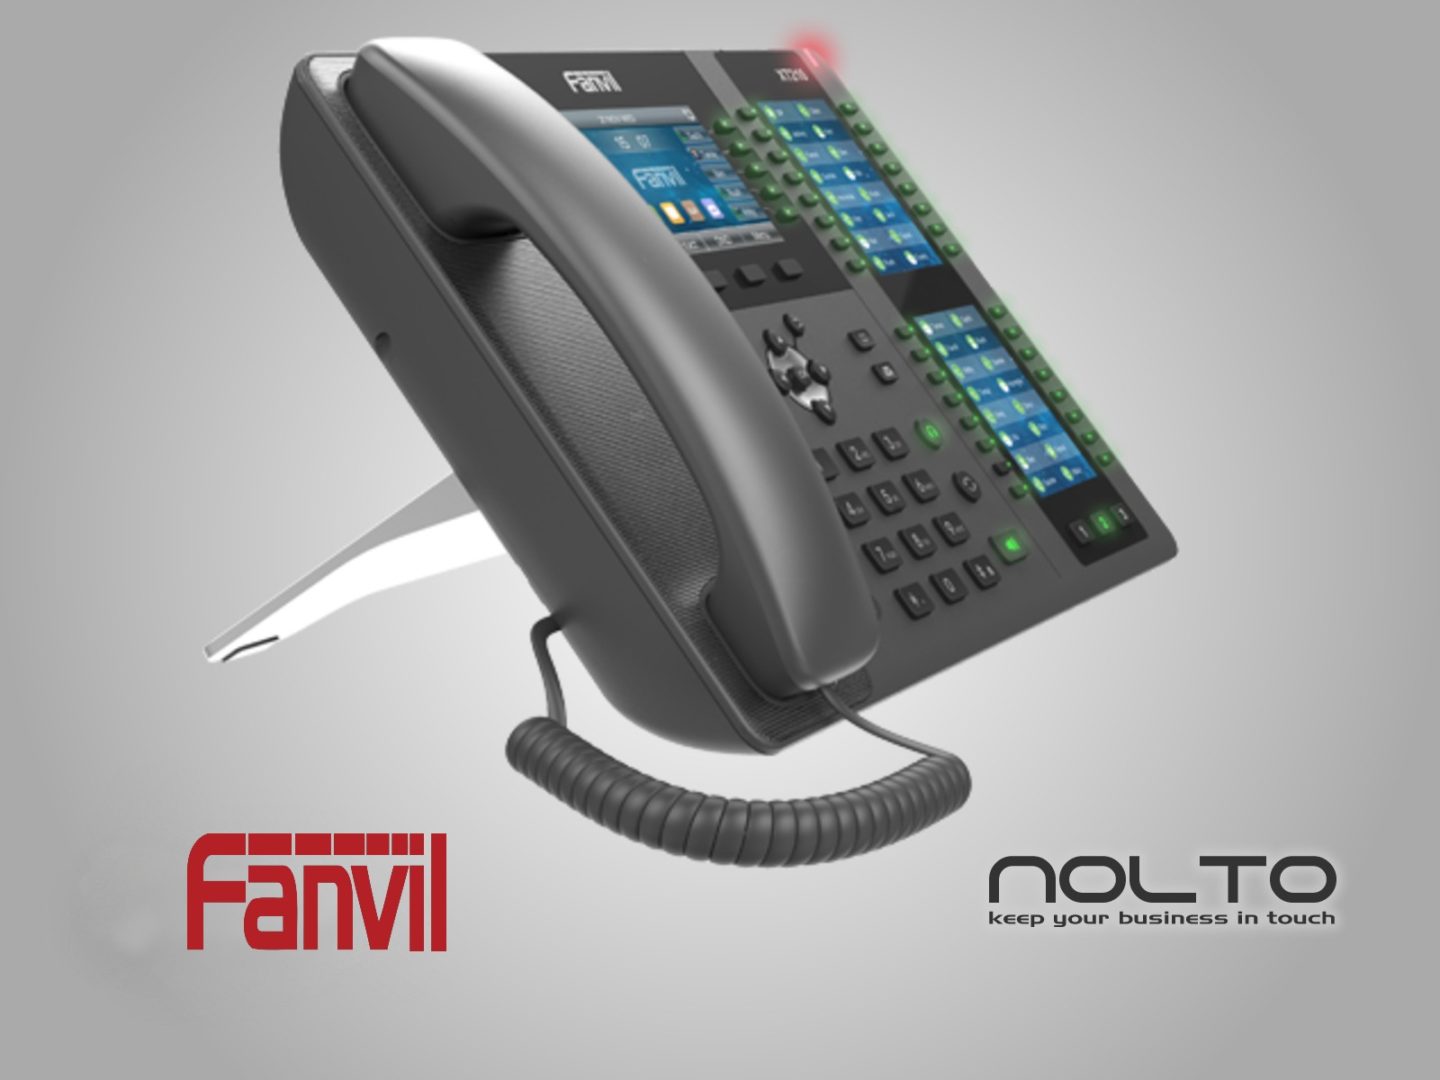 fanvil-x210-konsol-sekreter-telefonu2